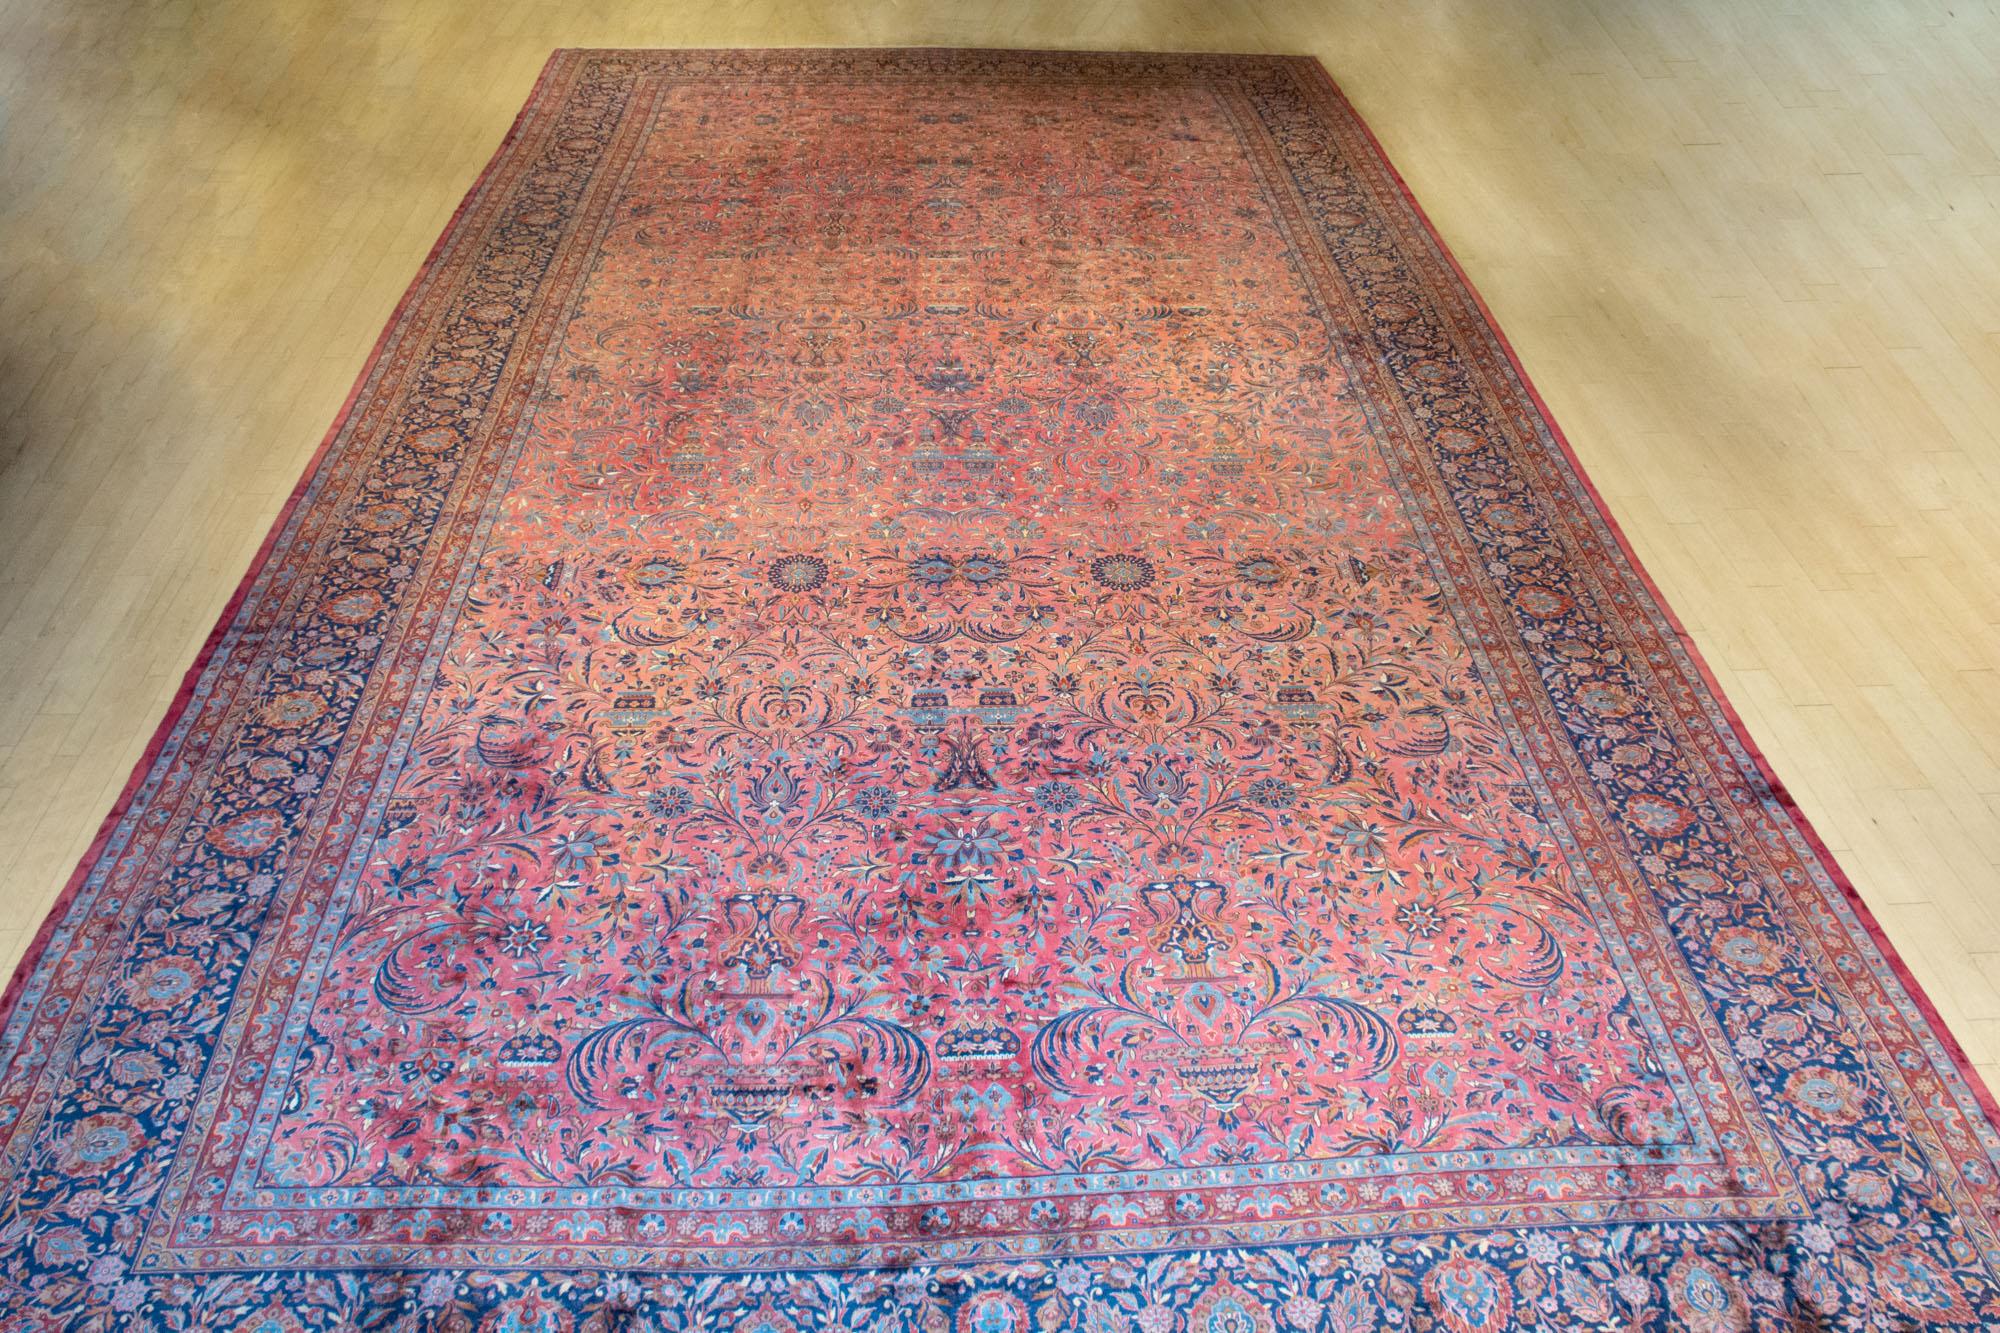 Kashan Carpet - Price Estimate: $5000 - $7000